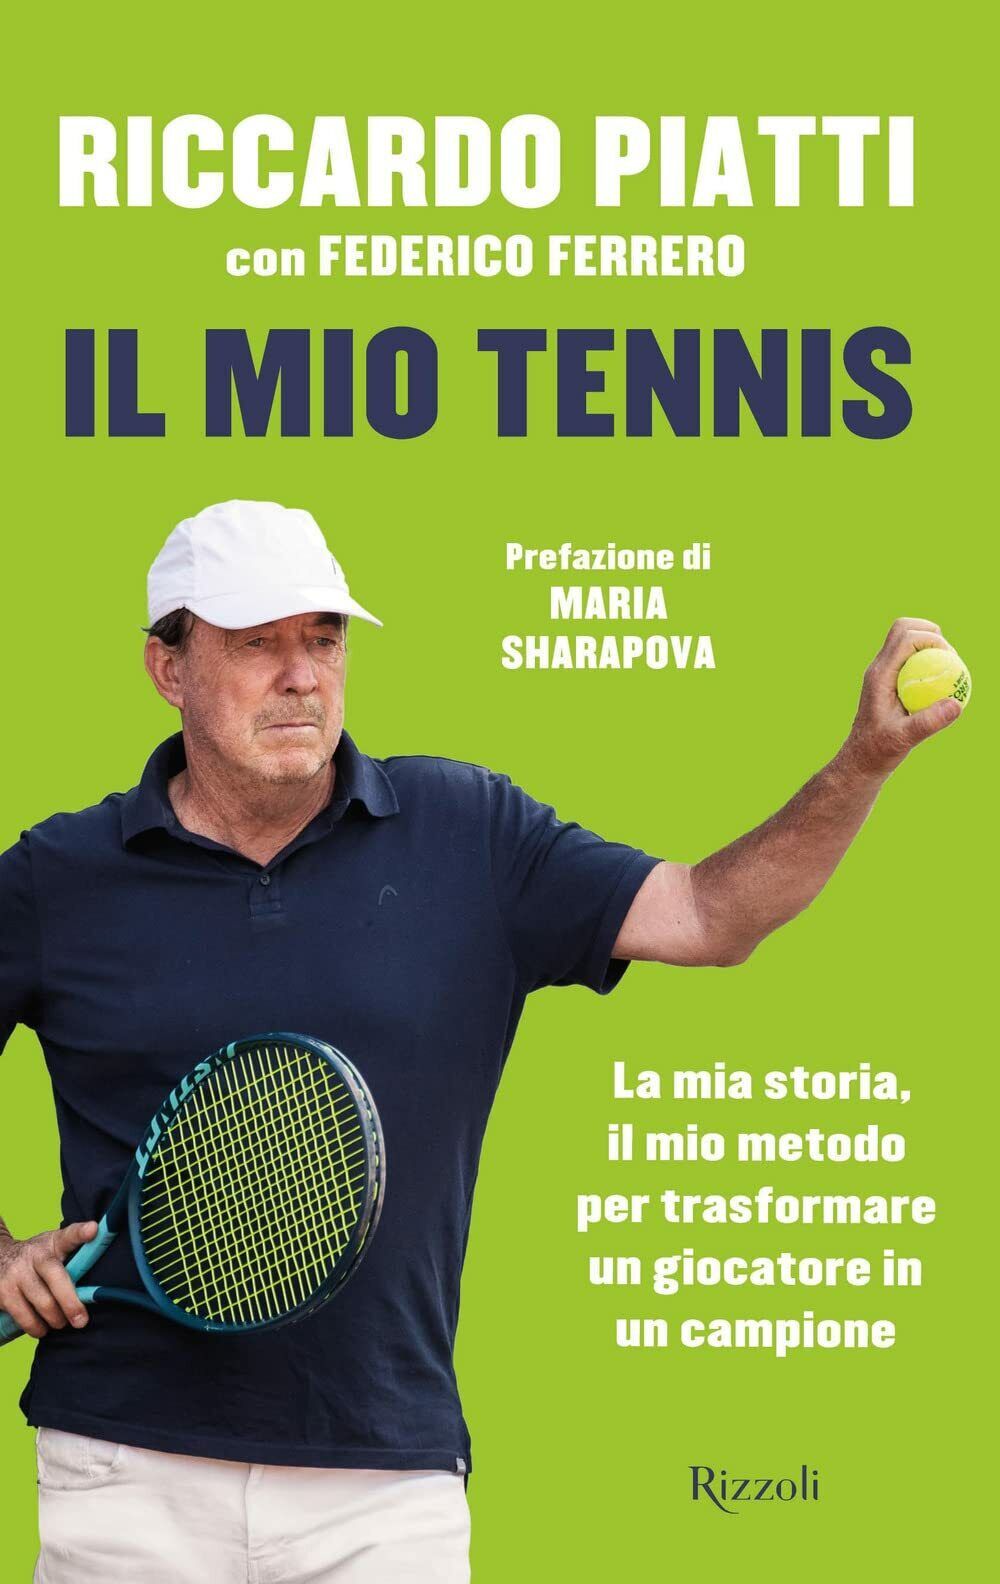 Il mio tennis - Riccardo Piatti, Federico Ferrero - Rizzoli, 2021